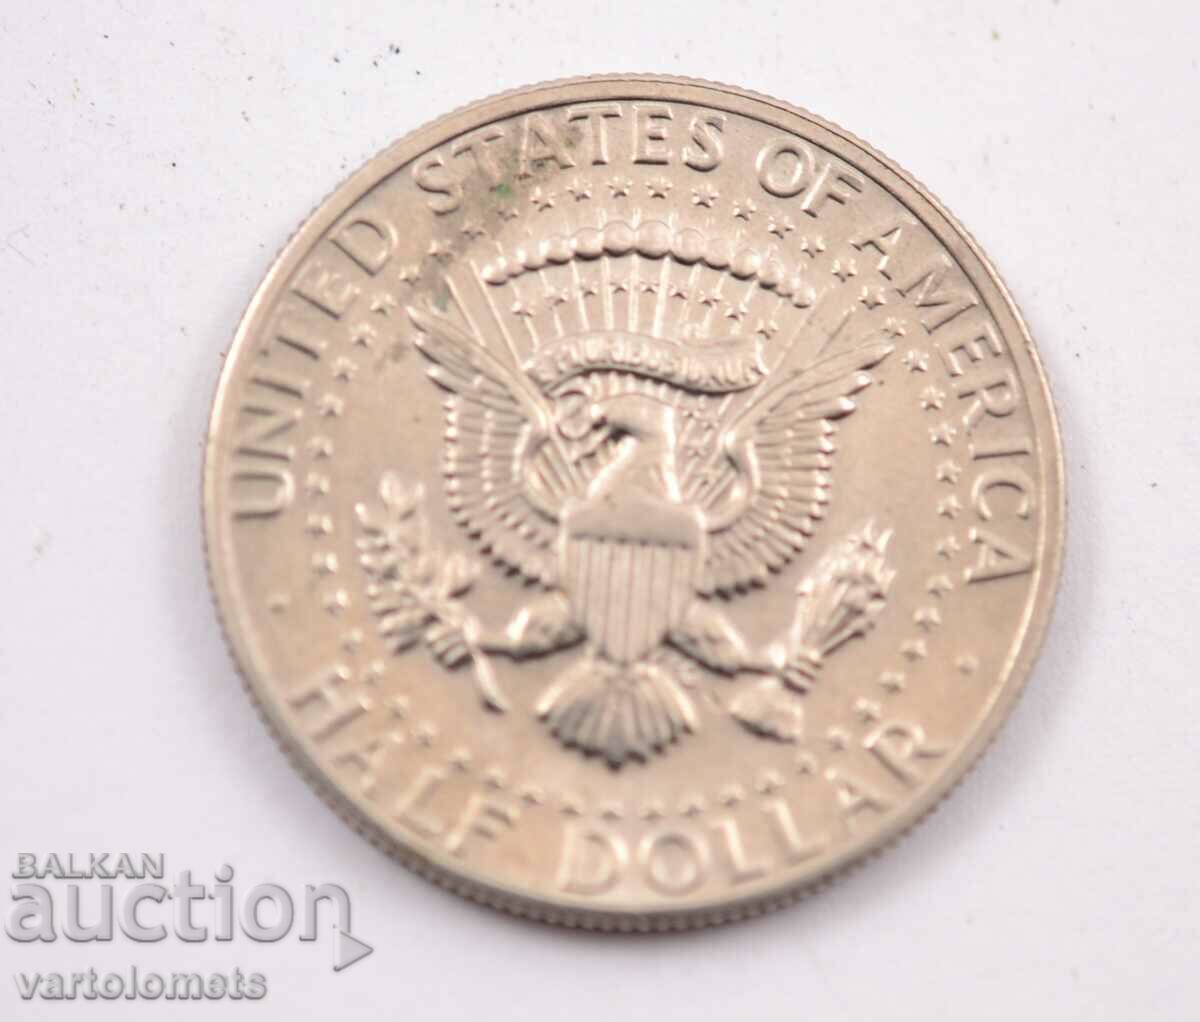 ½ δολάριο 1972 - Μισό δολάριο Kennedy ΗΠΑ